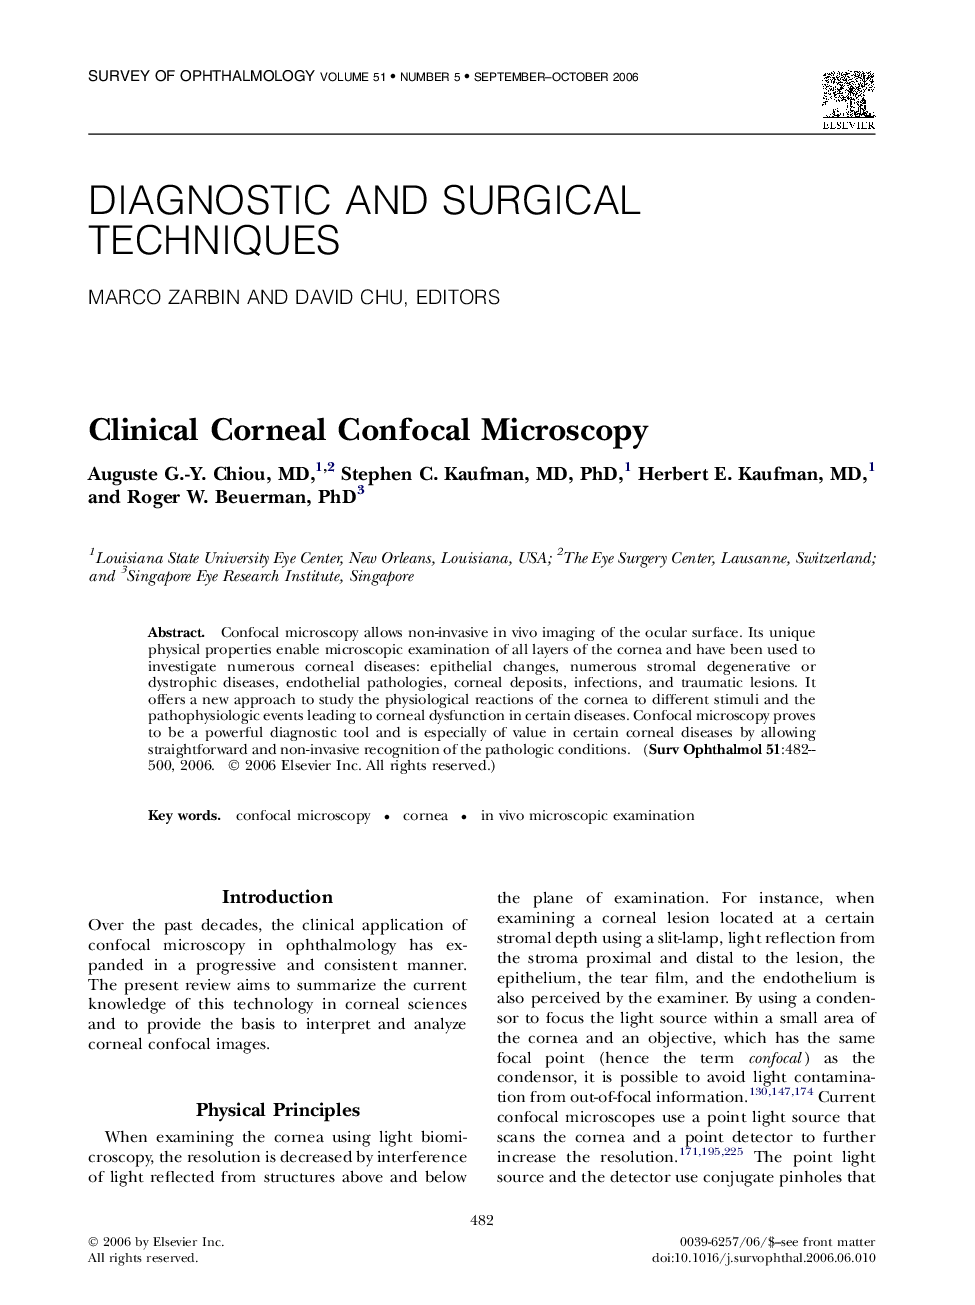 Clinical Corneal Confocal Microscopy 